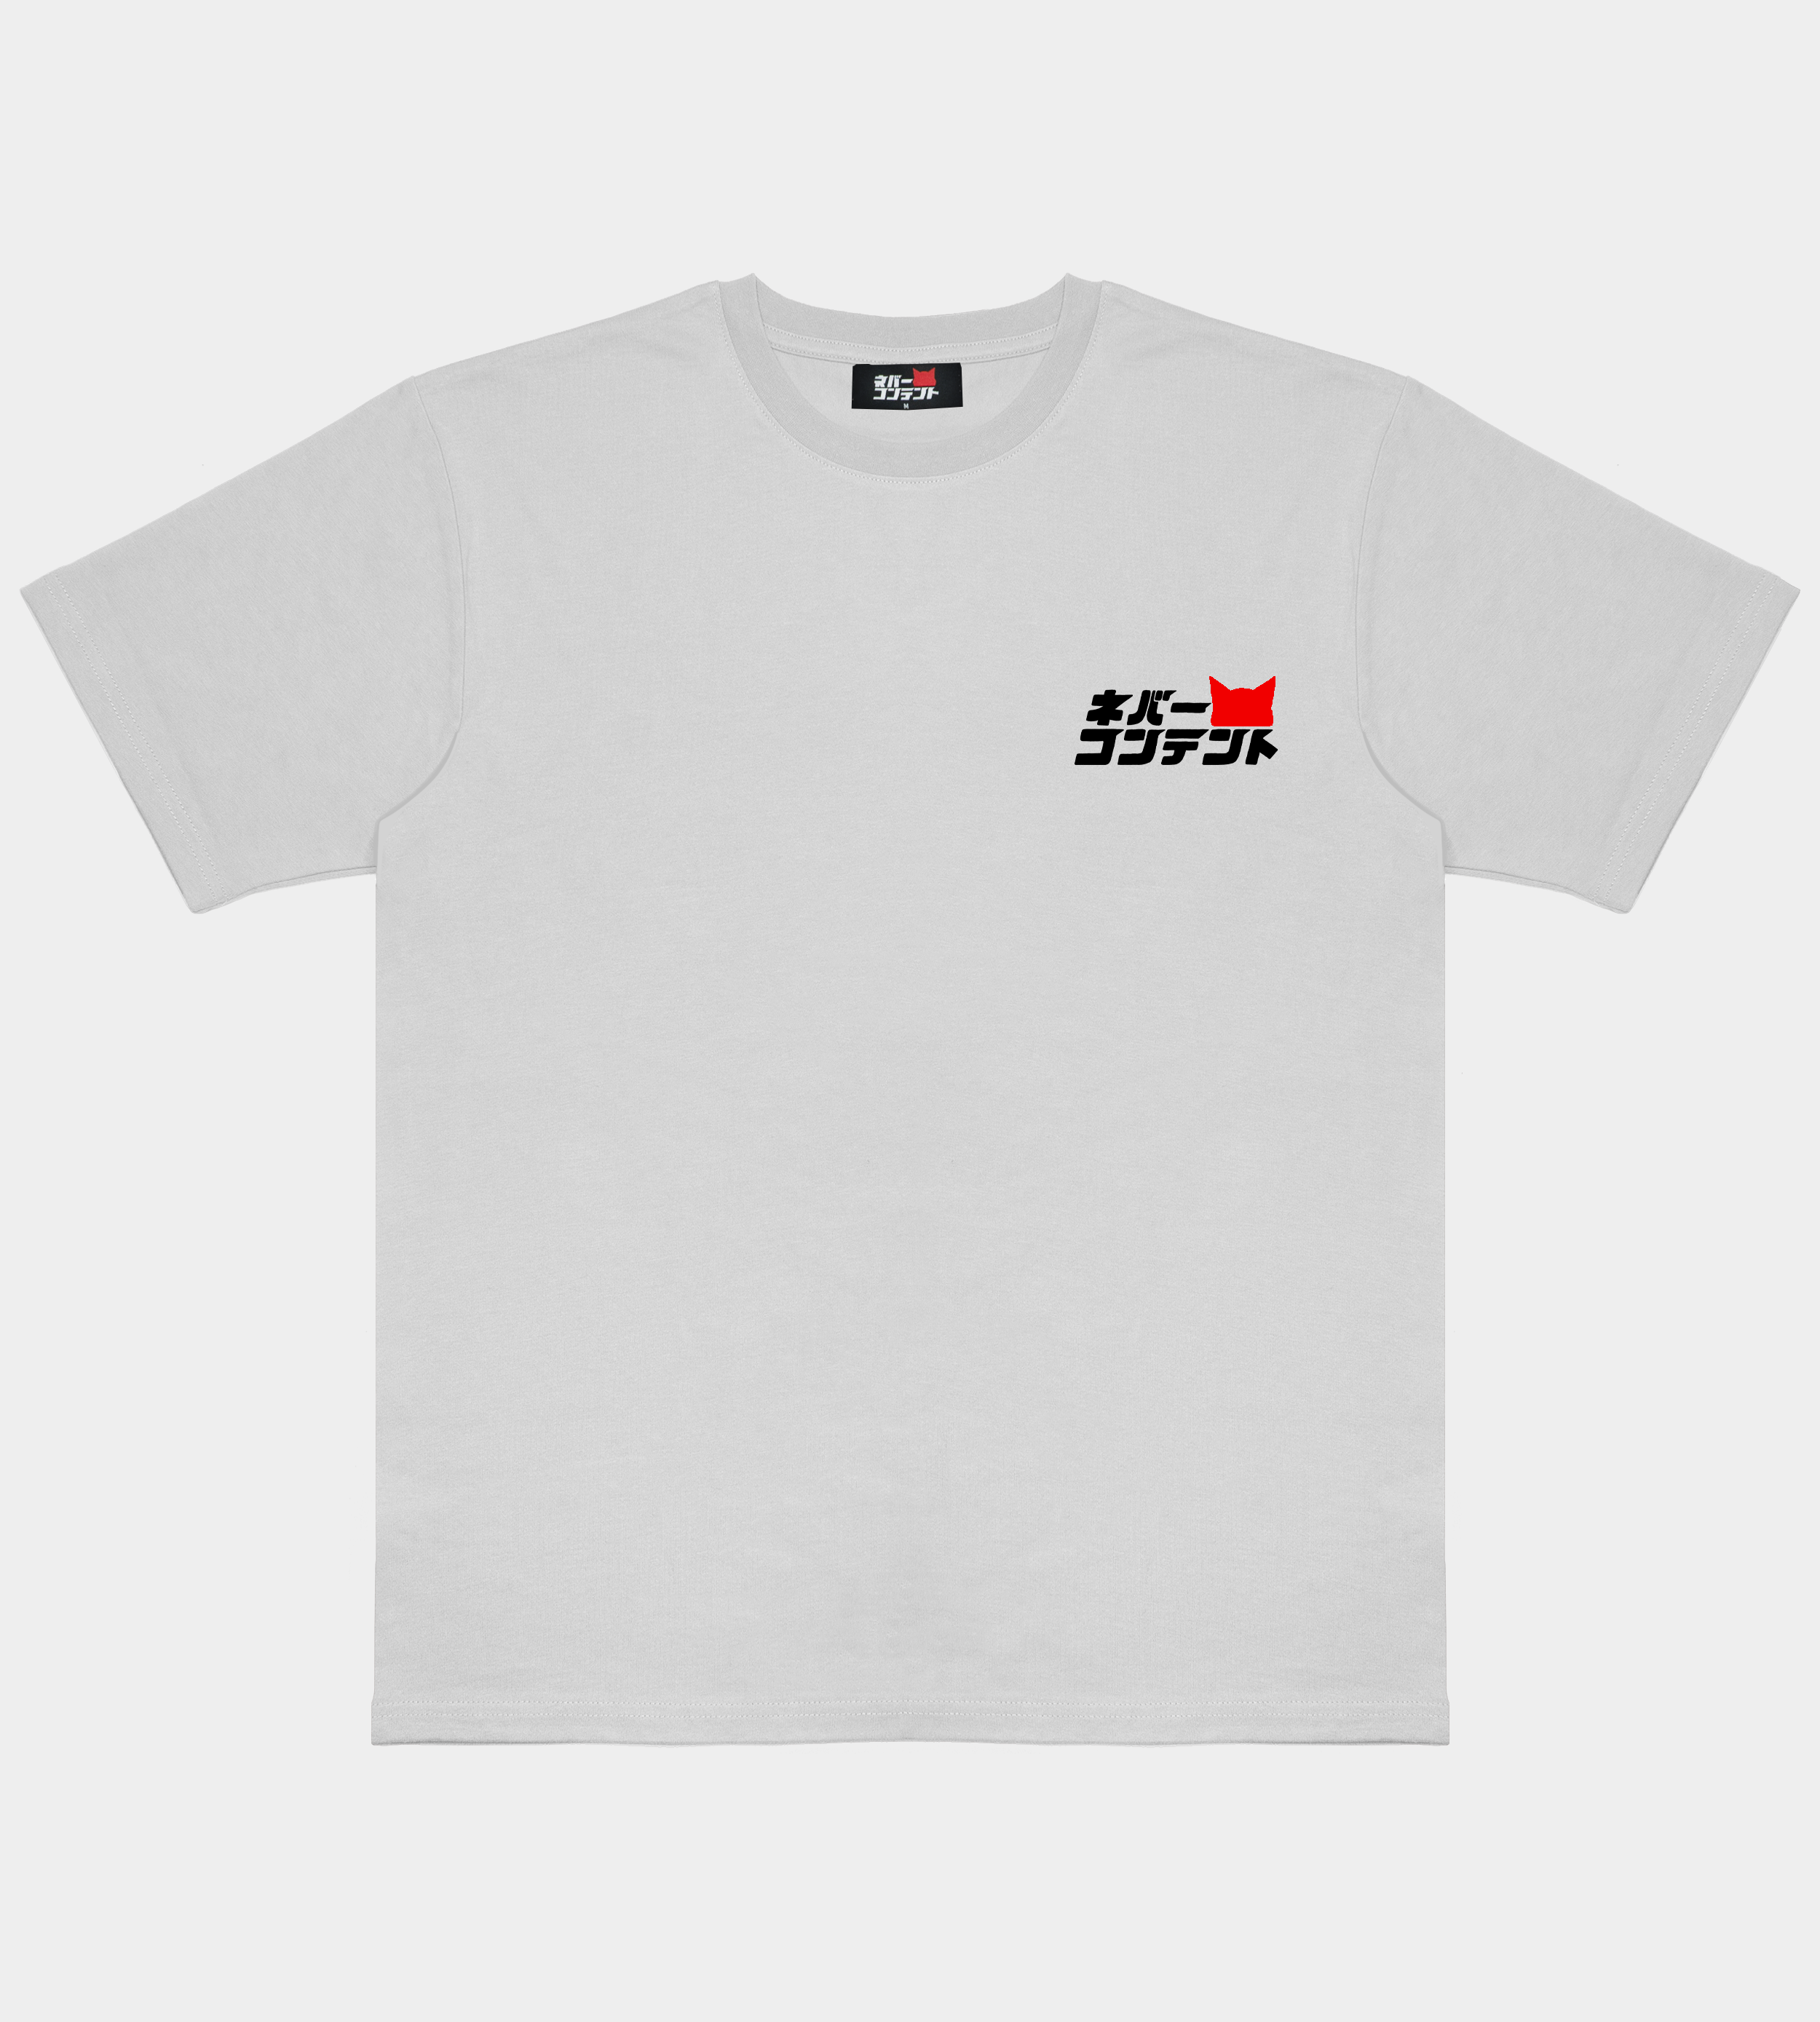 9Y "180SX" - White Shirt